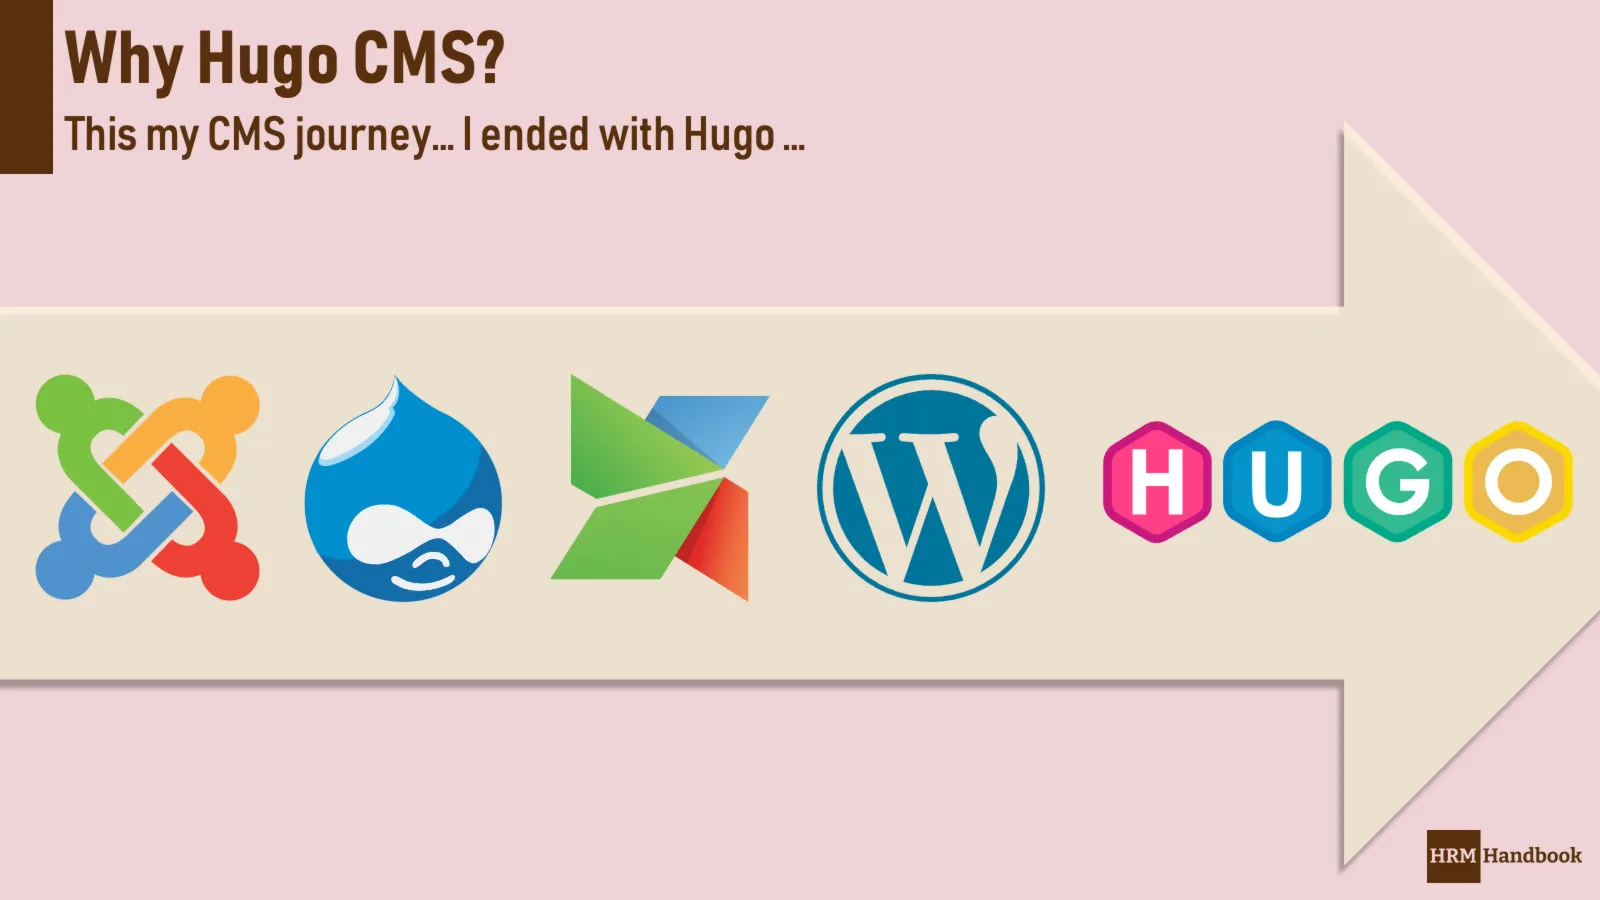 Why have I chosen Hugo CMS over Wordpress, Drupal, MODx or Joomla?